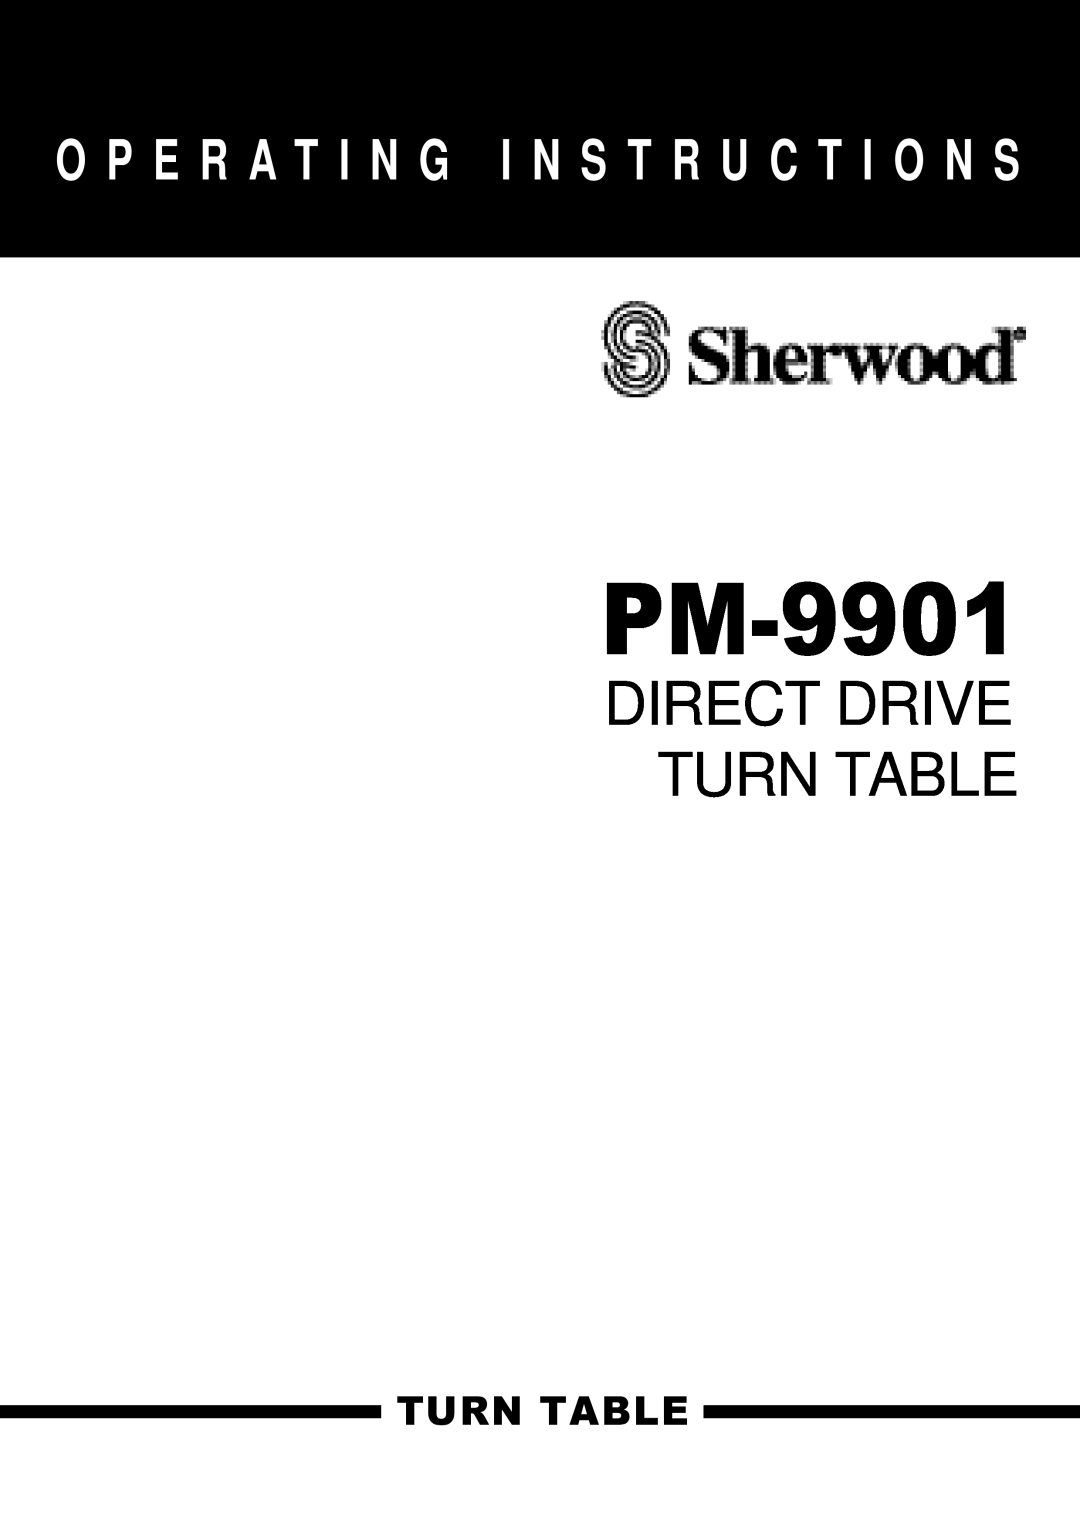 Sherwood PM-9901 manual Direct Drive Turn Table, O P E R A T I N G I N S T R U C T I O N S 